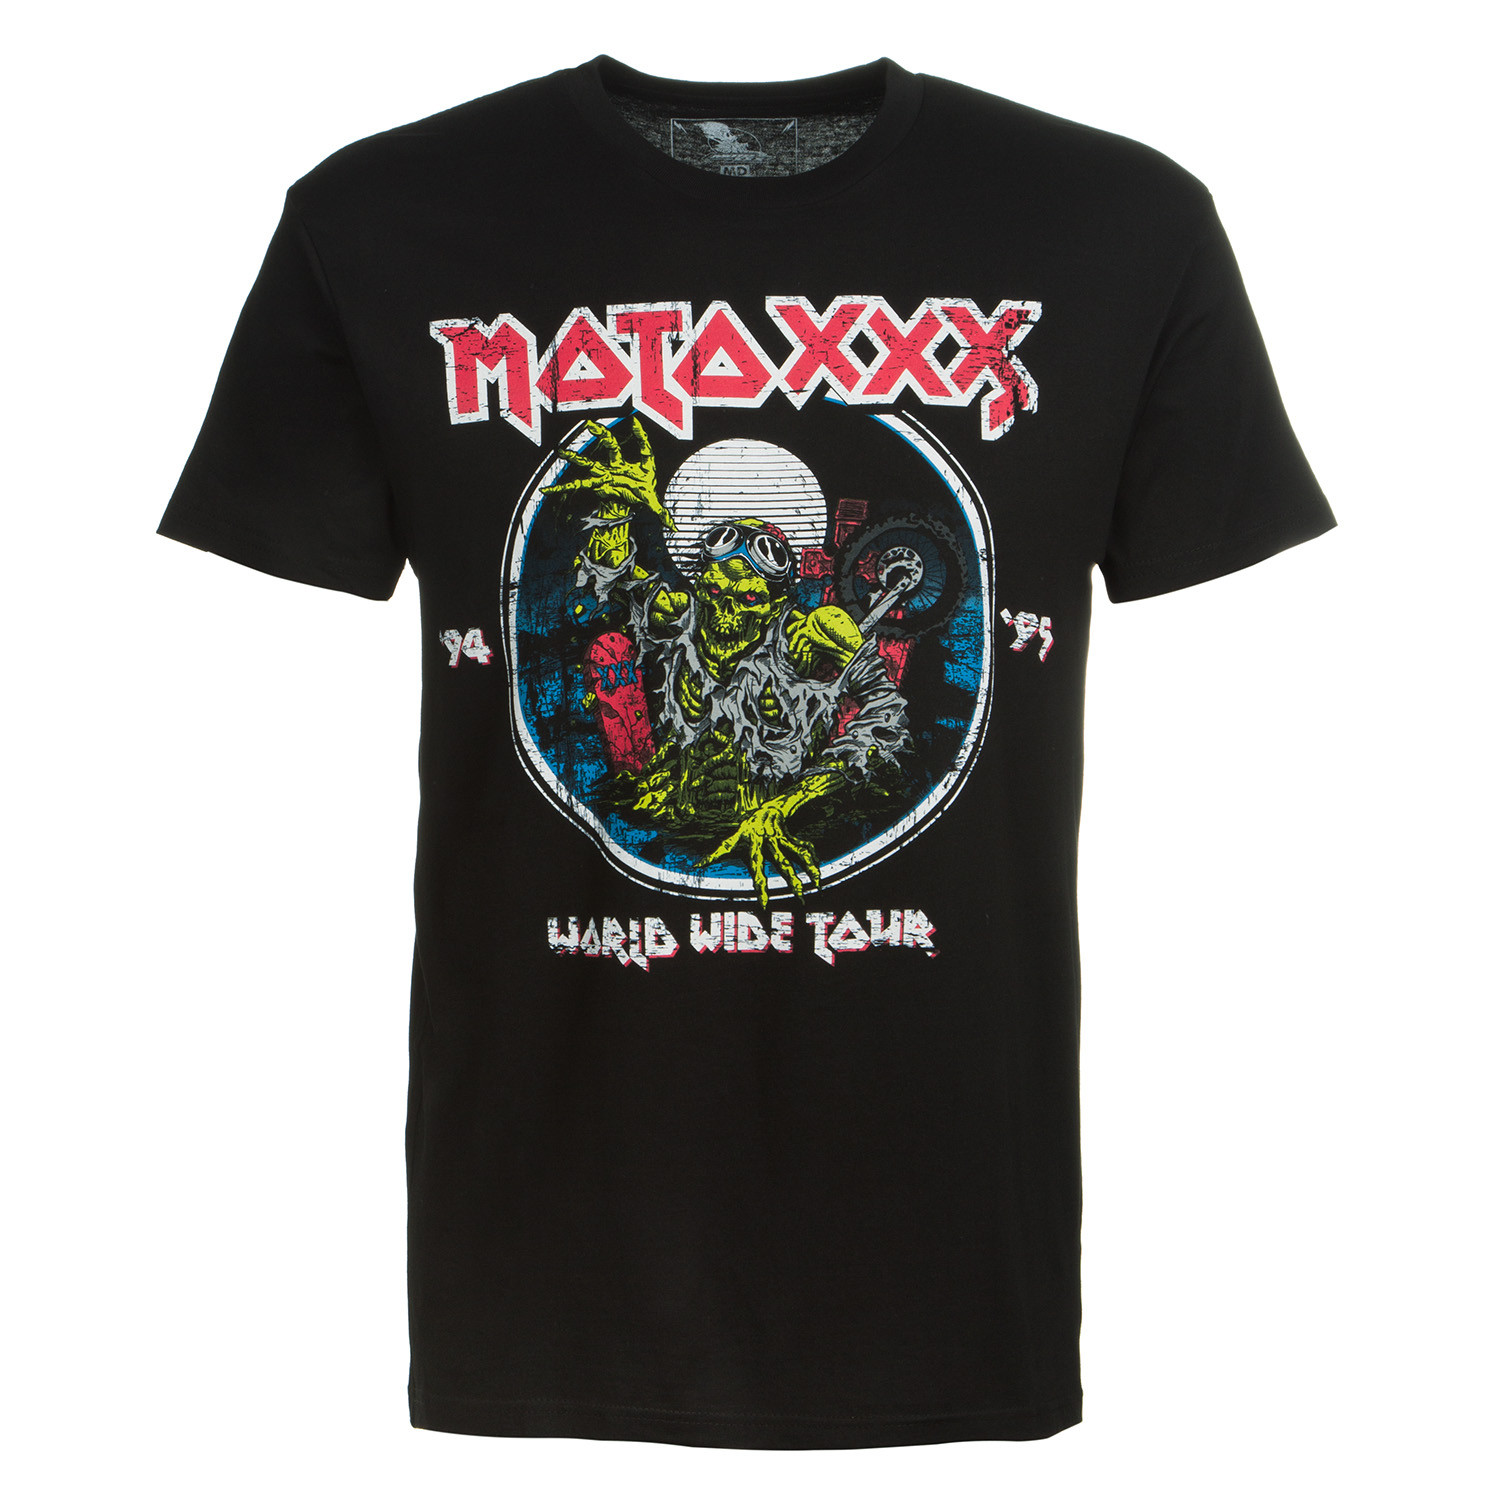 O'Neal T-Shirt Moto XXX World Tour Black